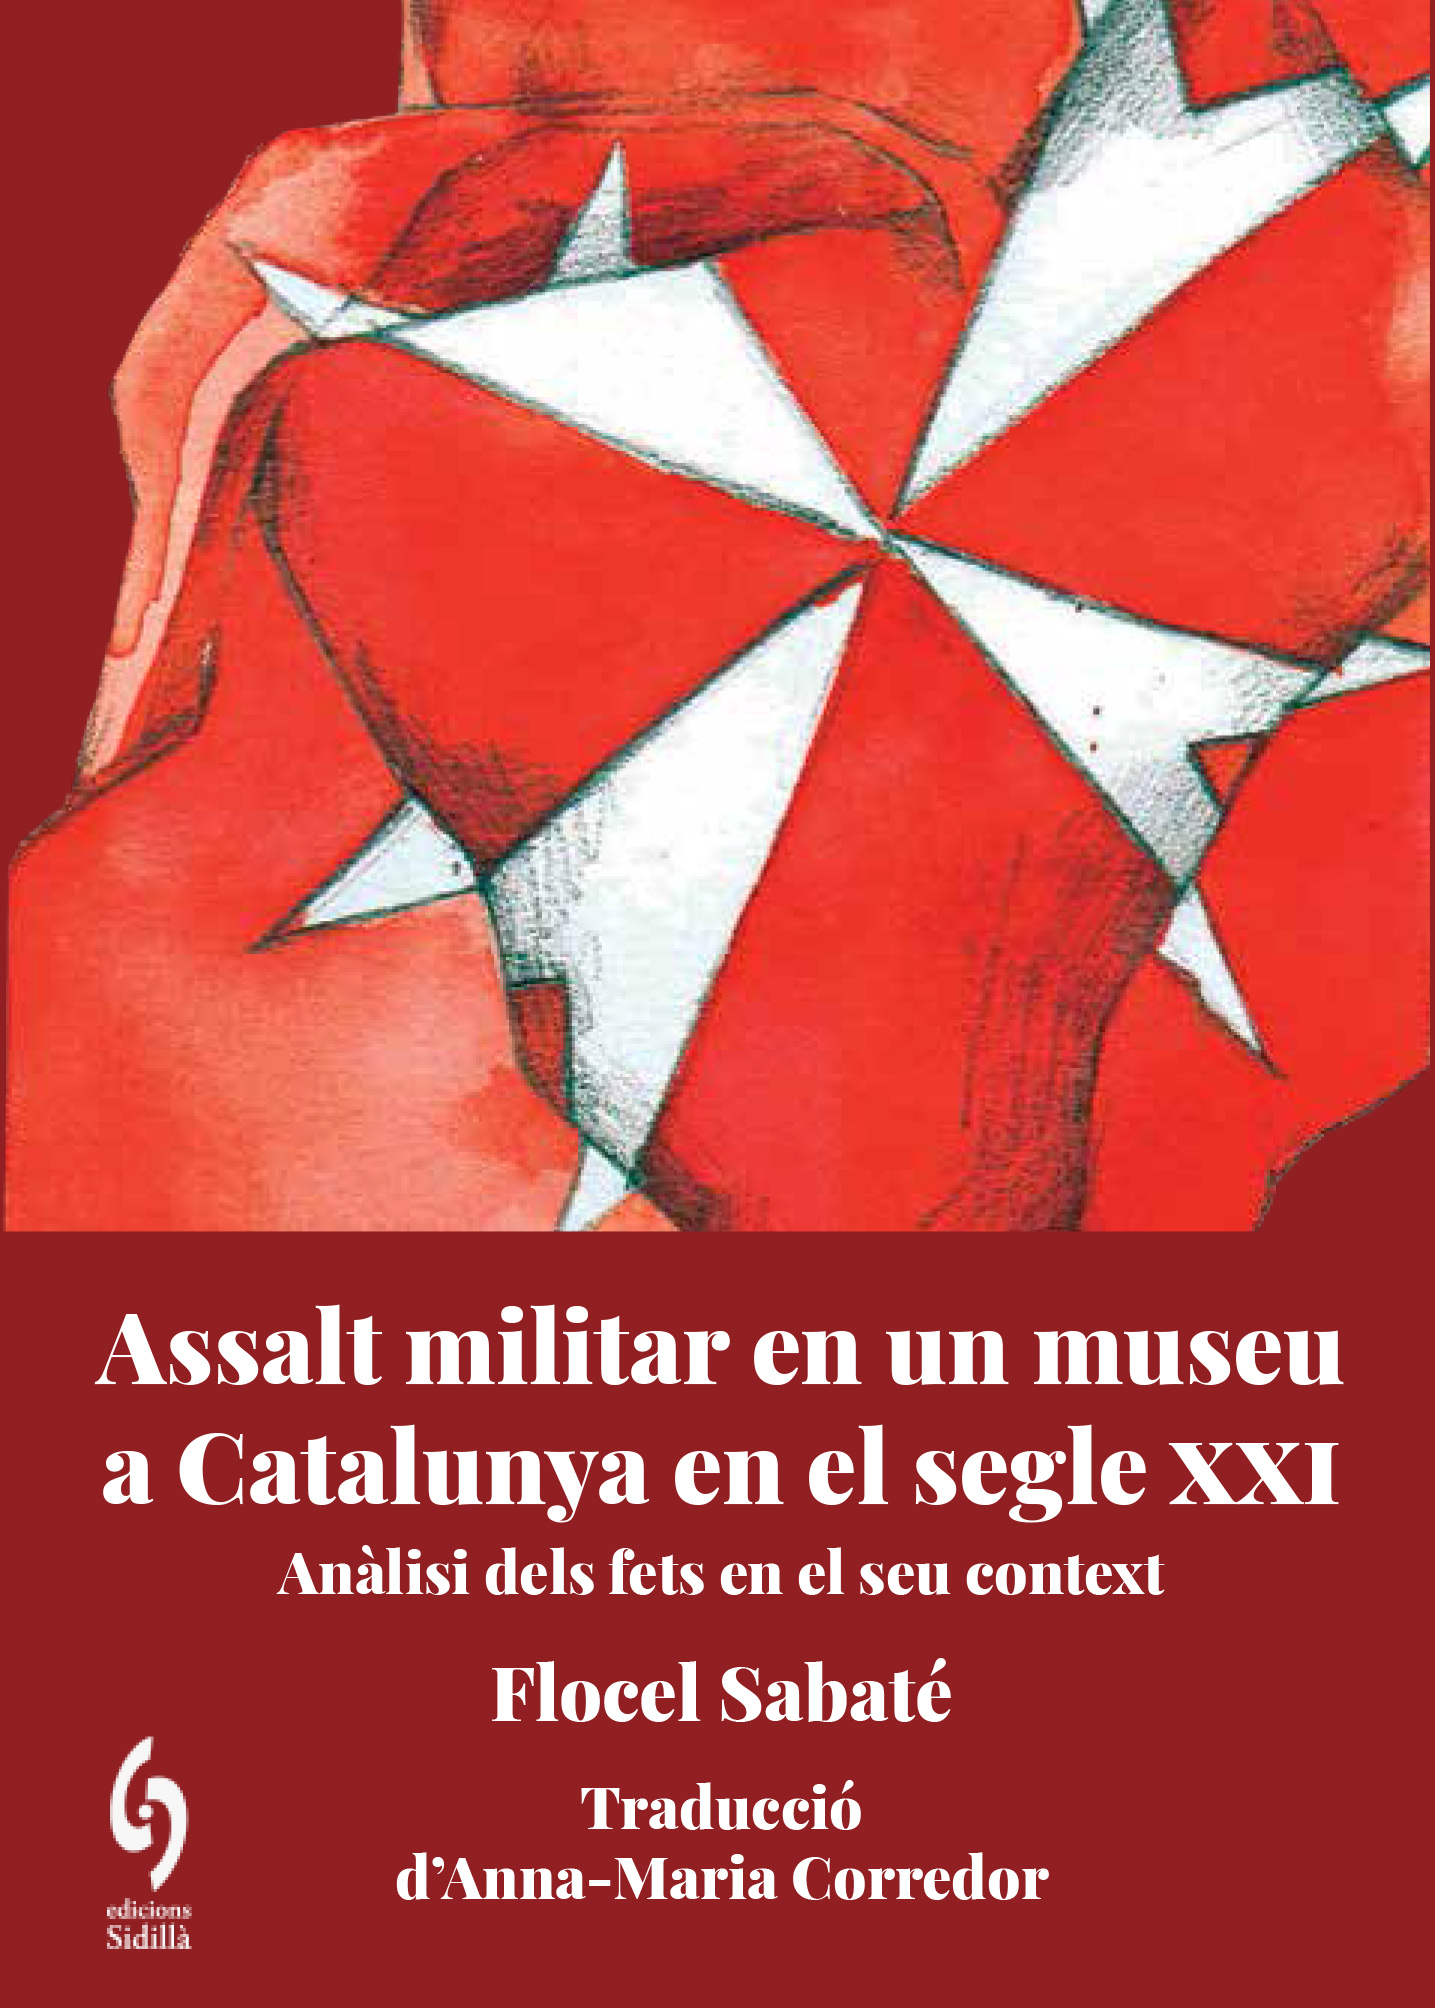 Presentació del llibre: Assalt militar en un museu de Catalunya en el segle XXI. Anàlisi dels fets en el seu context